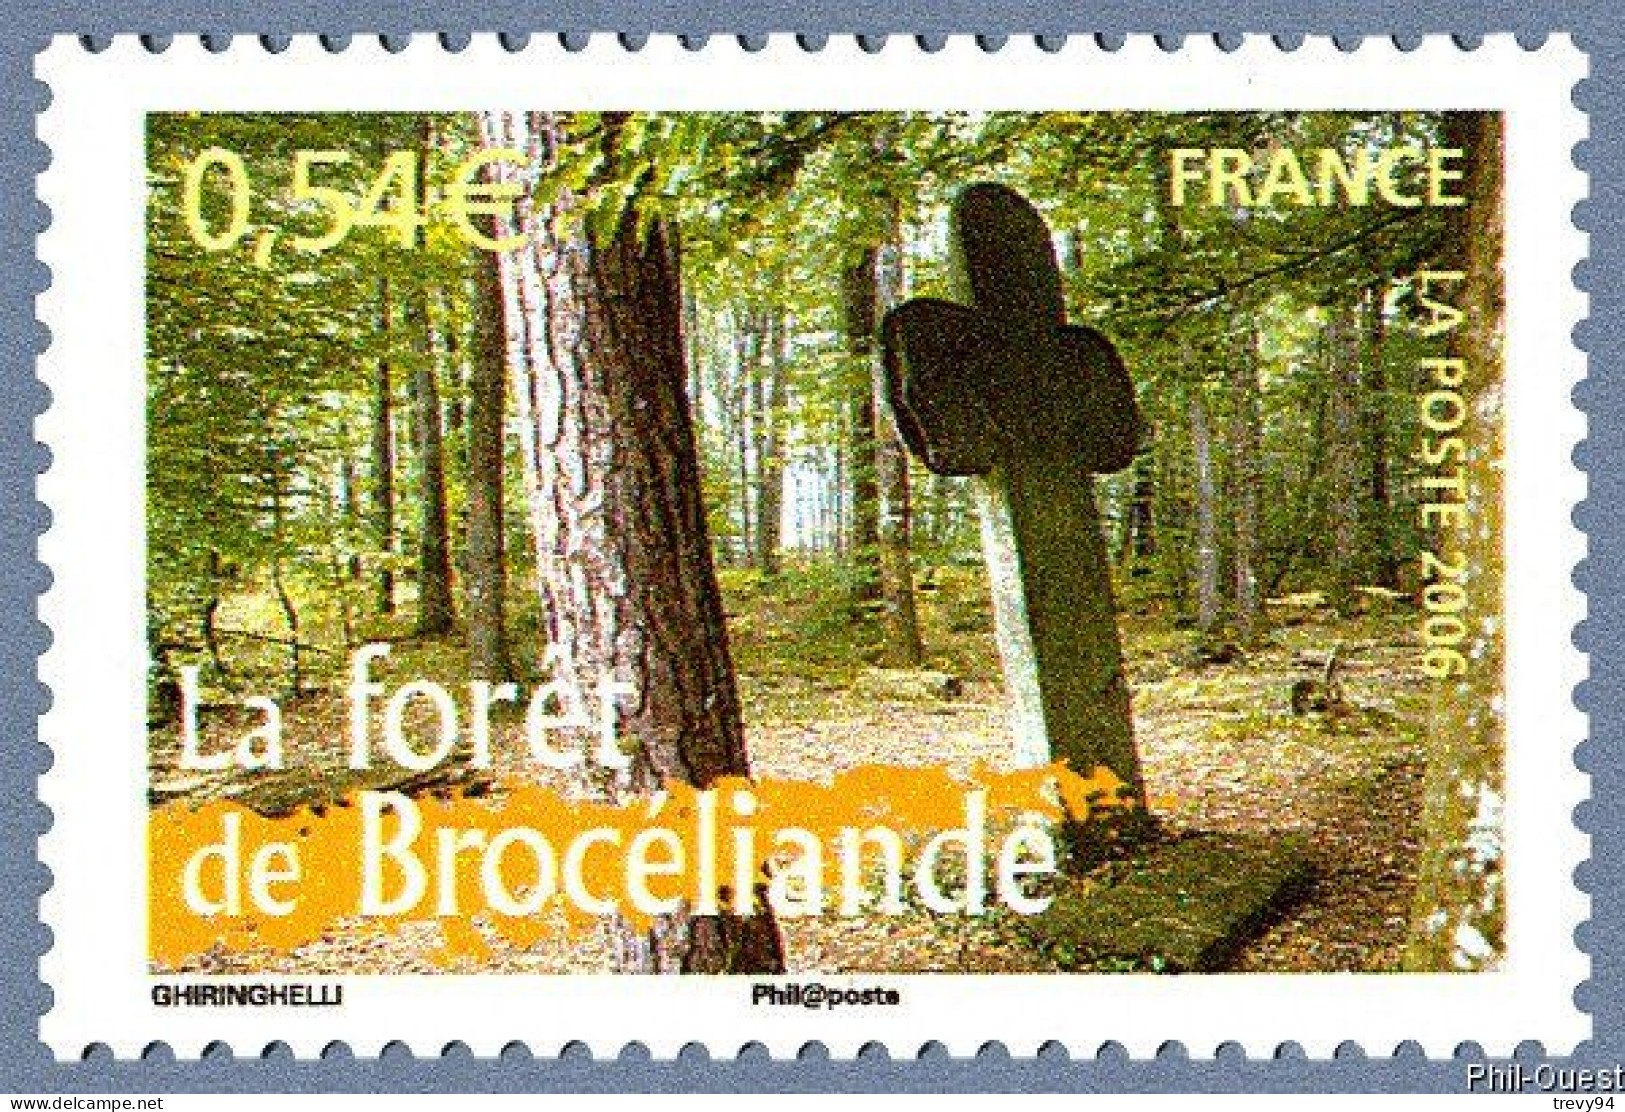 Timbre De 2006 - Portraits De Régions N°8 - La France à Vivre Forêt De Brocéliande - N° 3944 - Unused Stamps